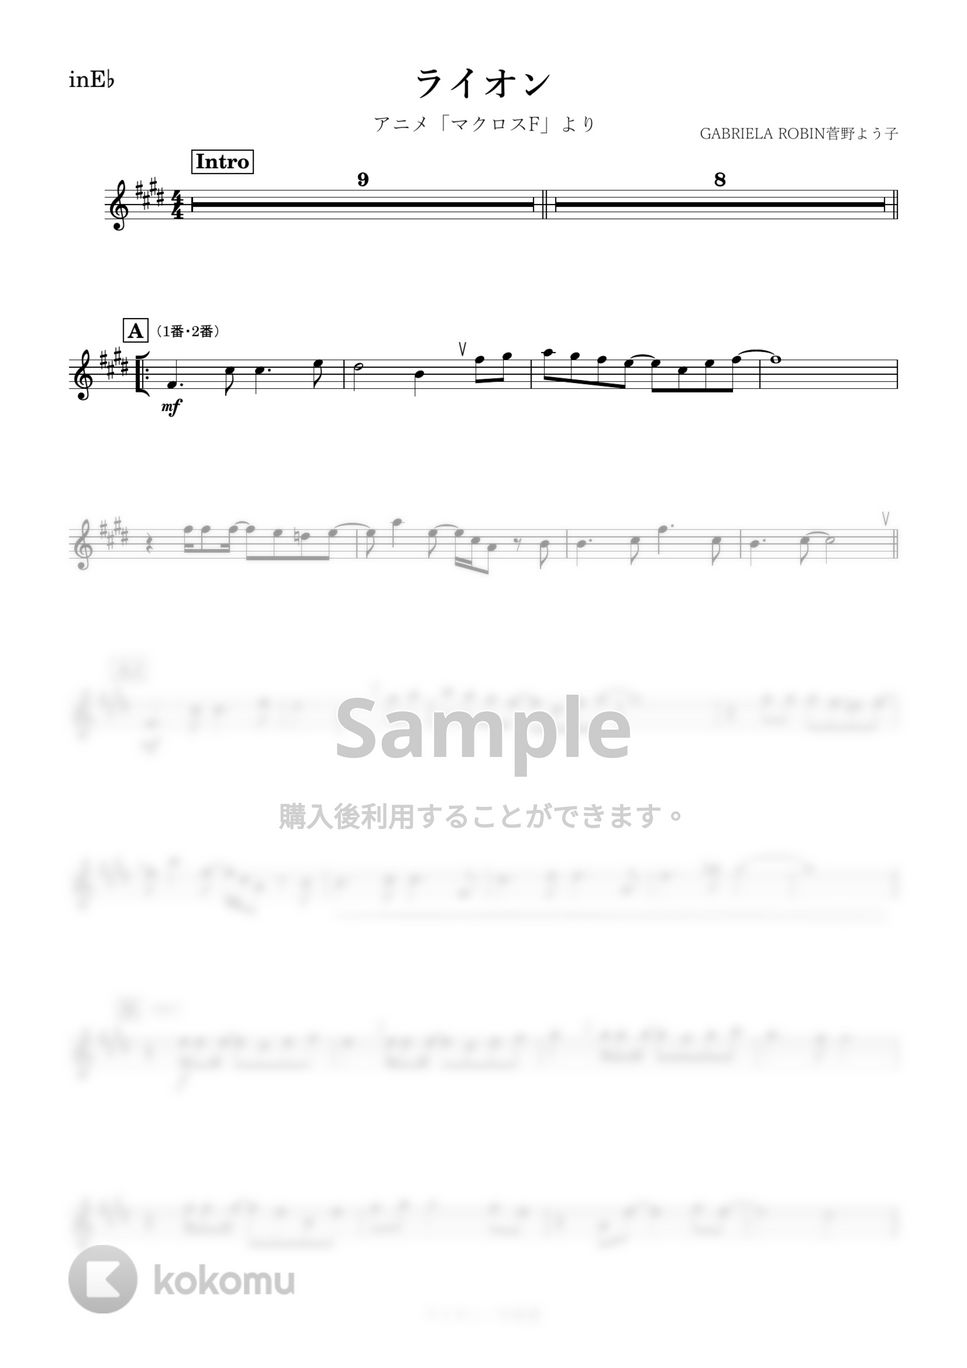 マクロスF - ライオン (E♭) by kanamusic